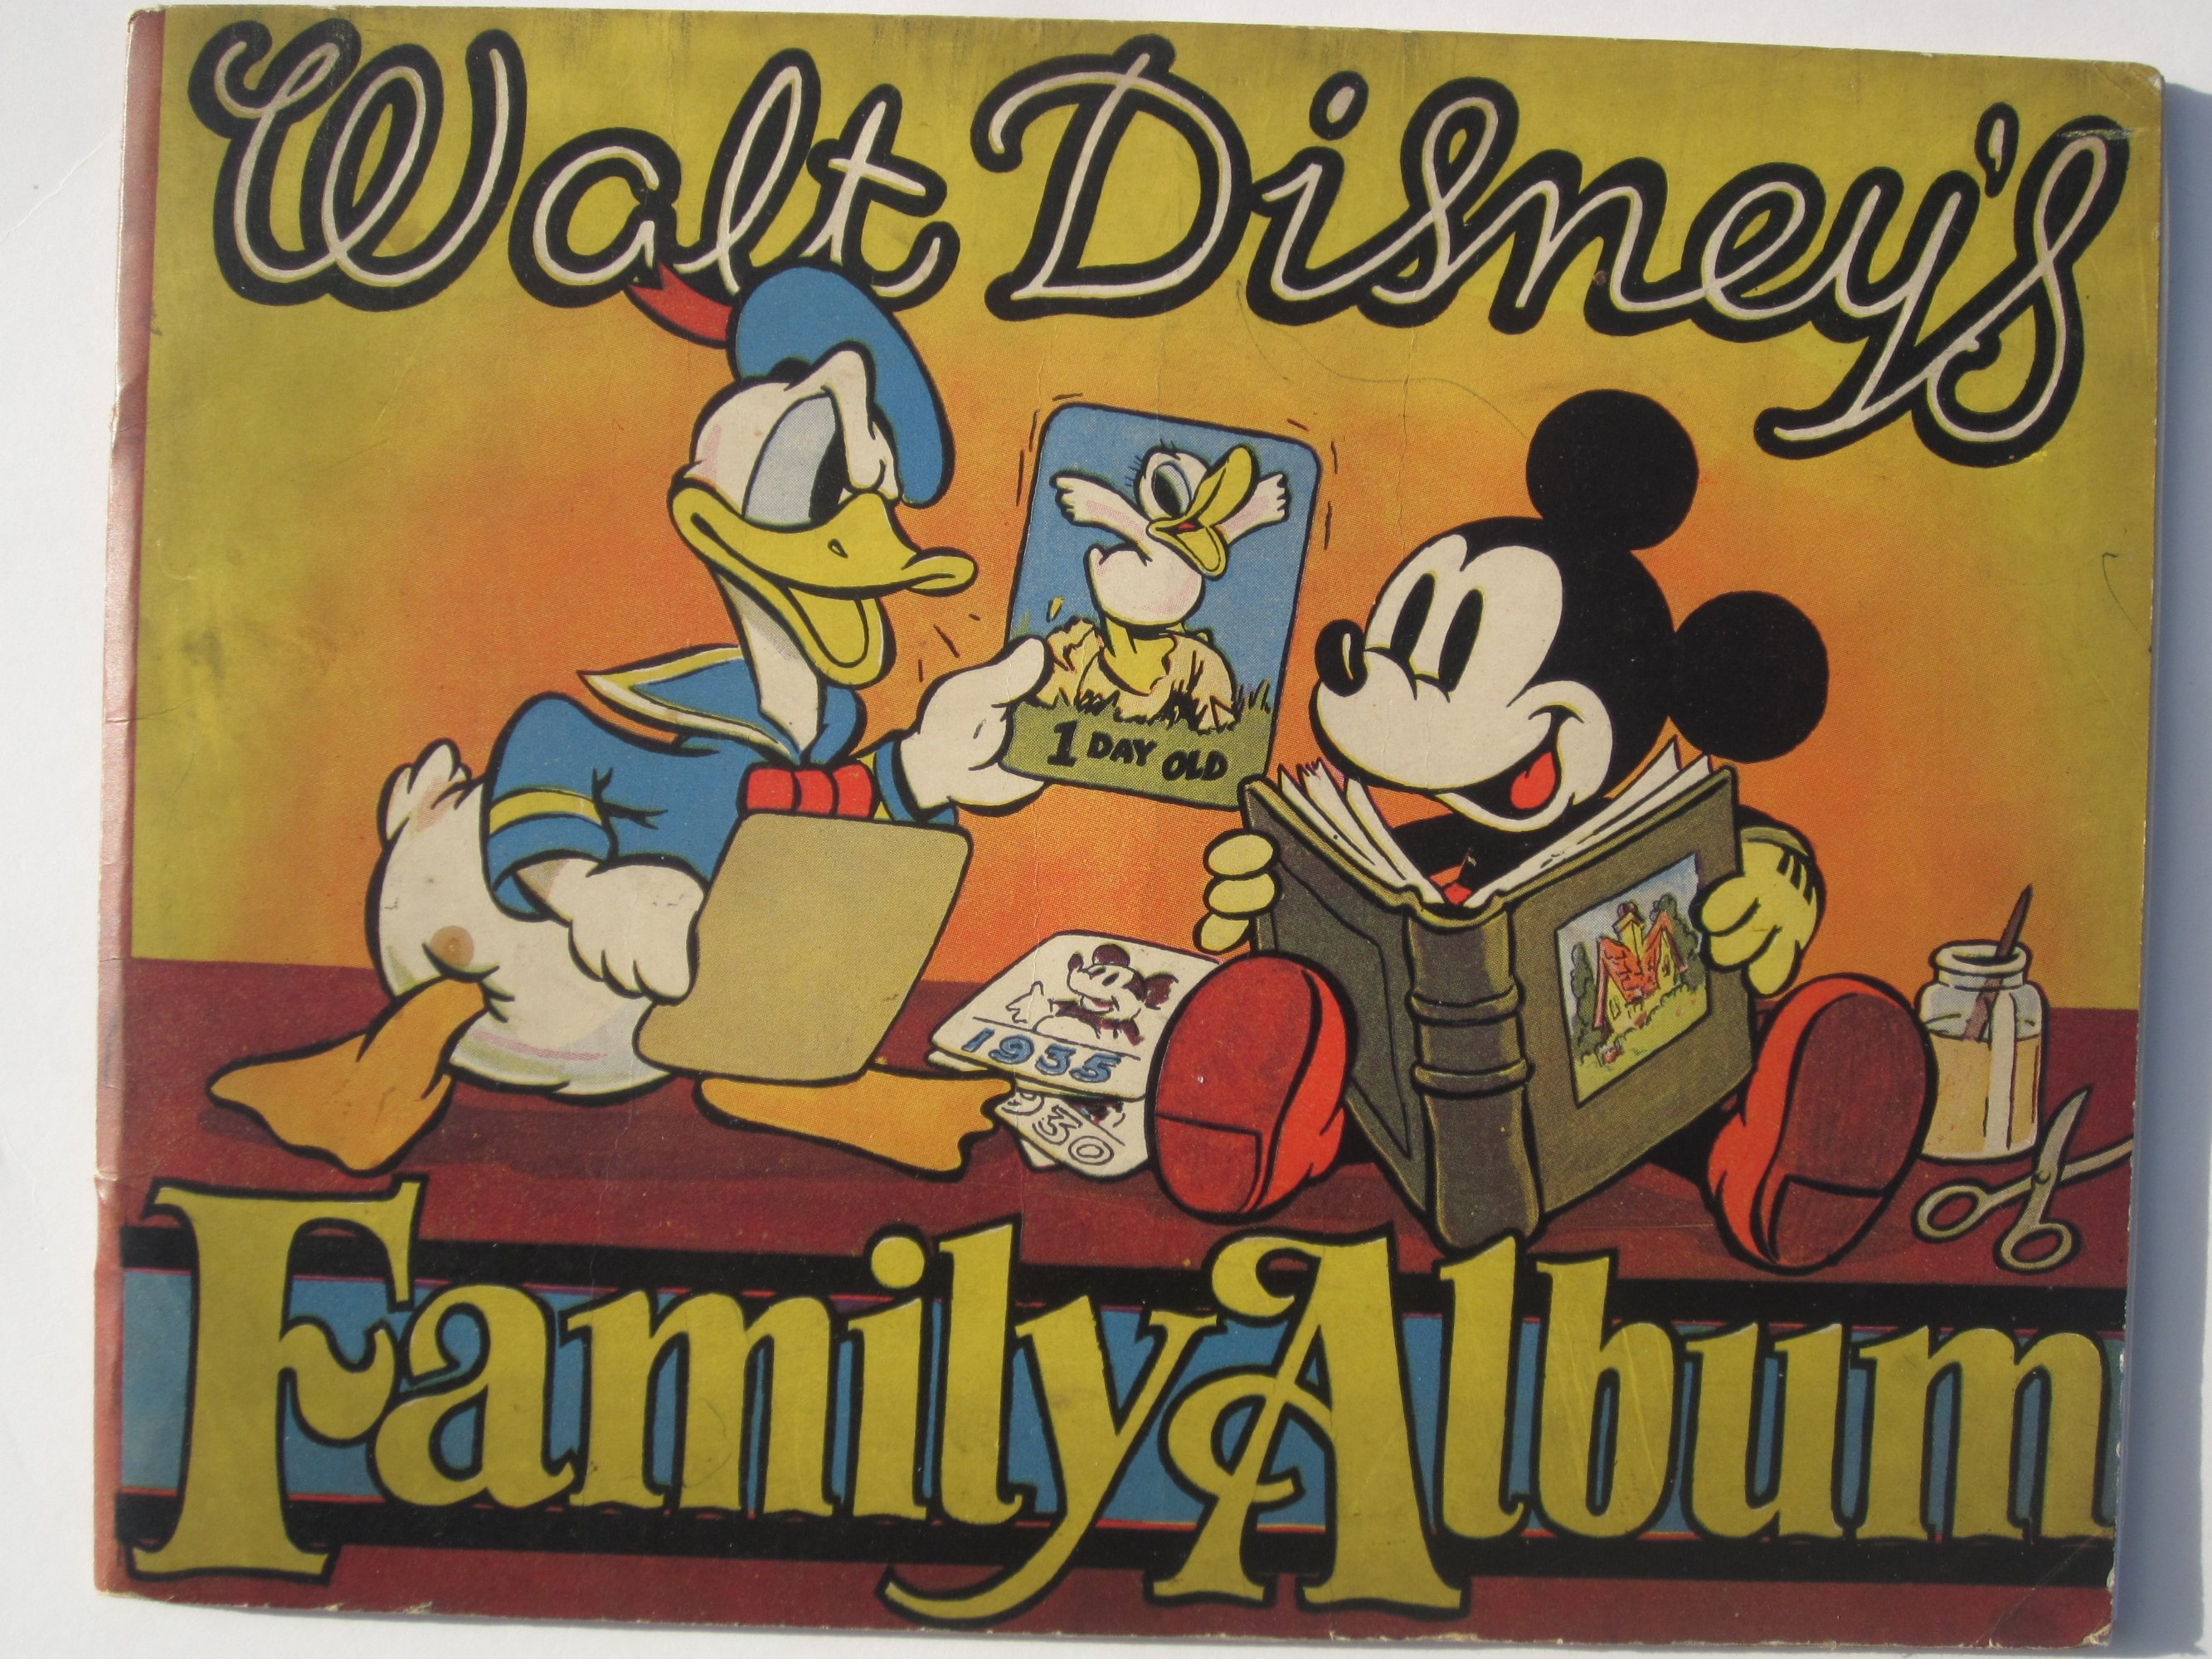 Disney Family Photo Albums